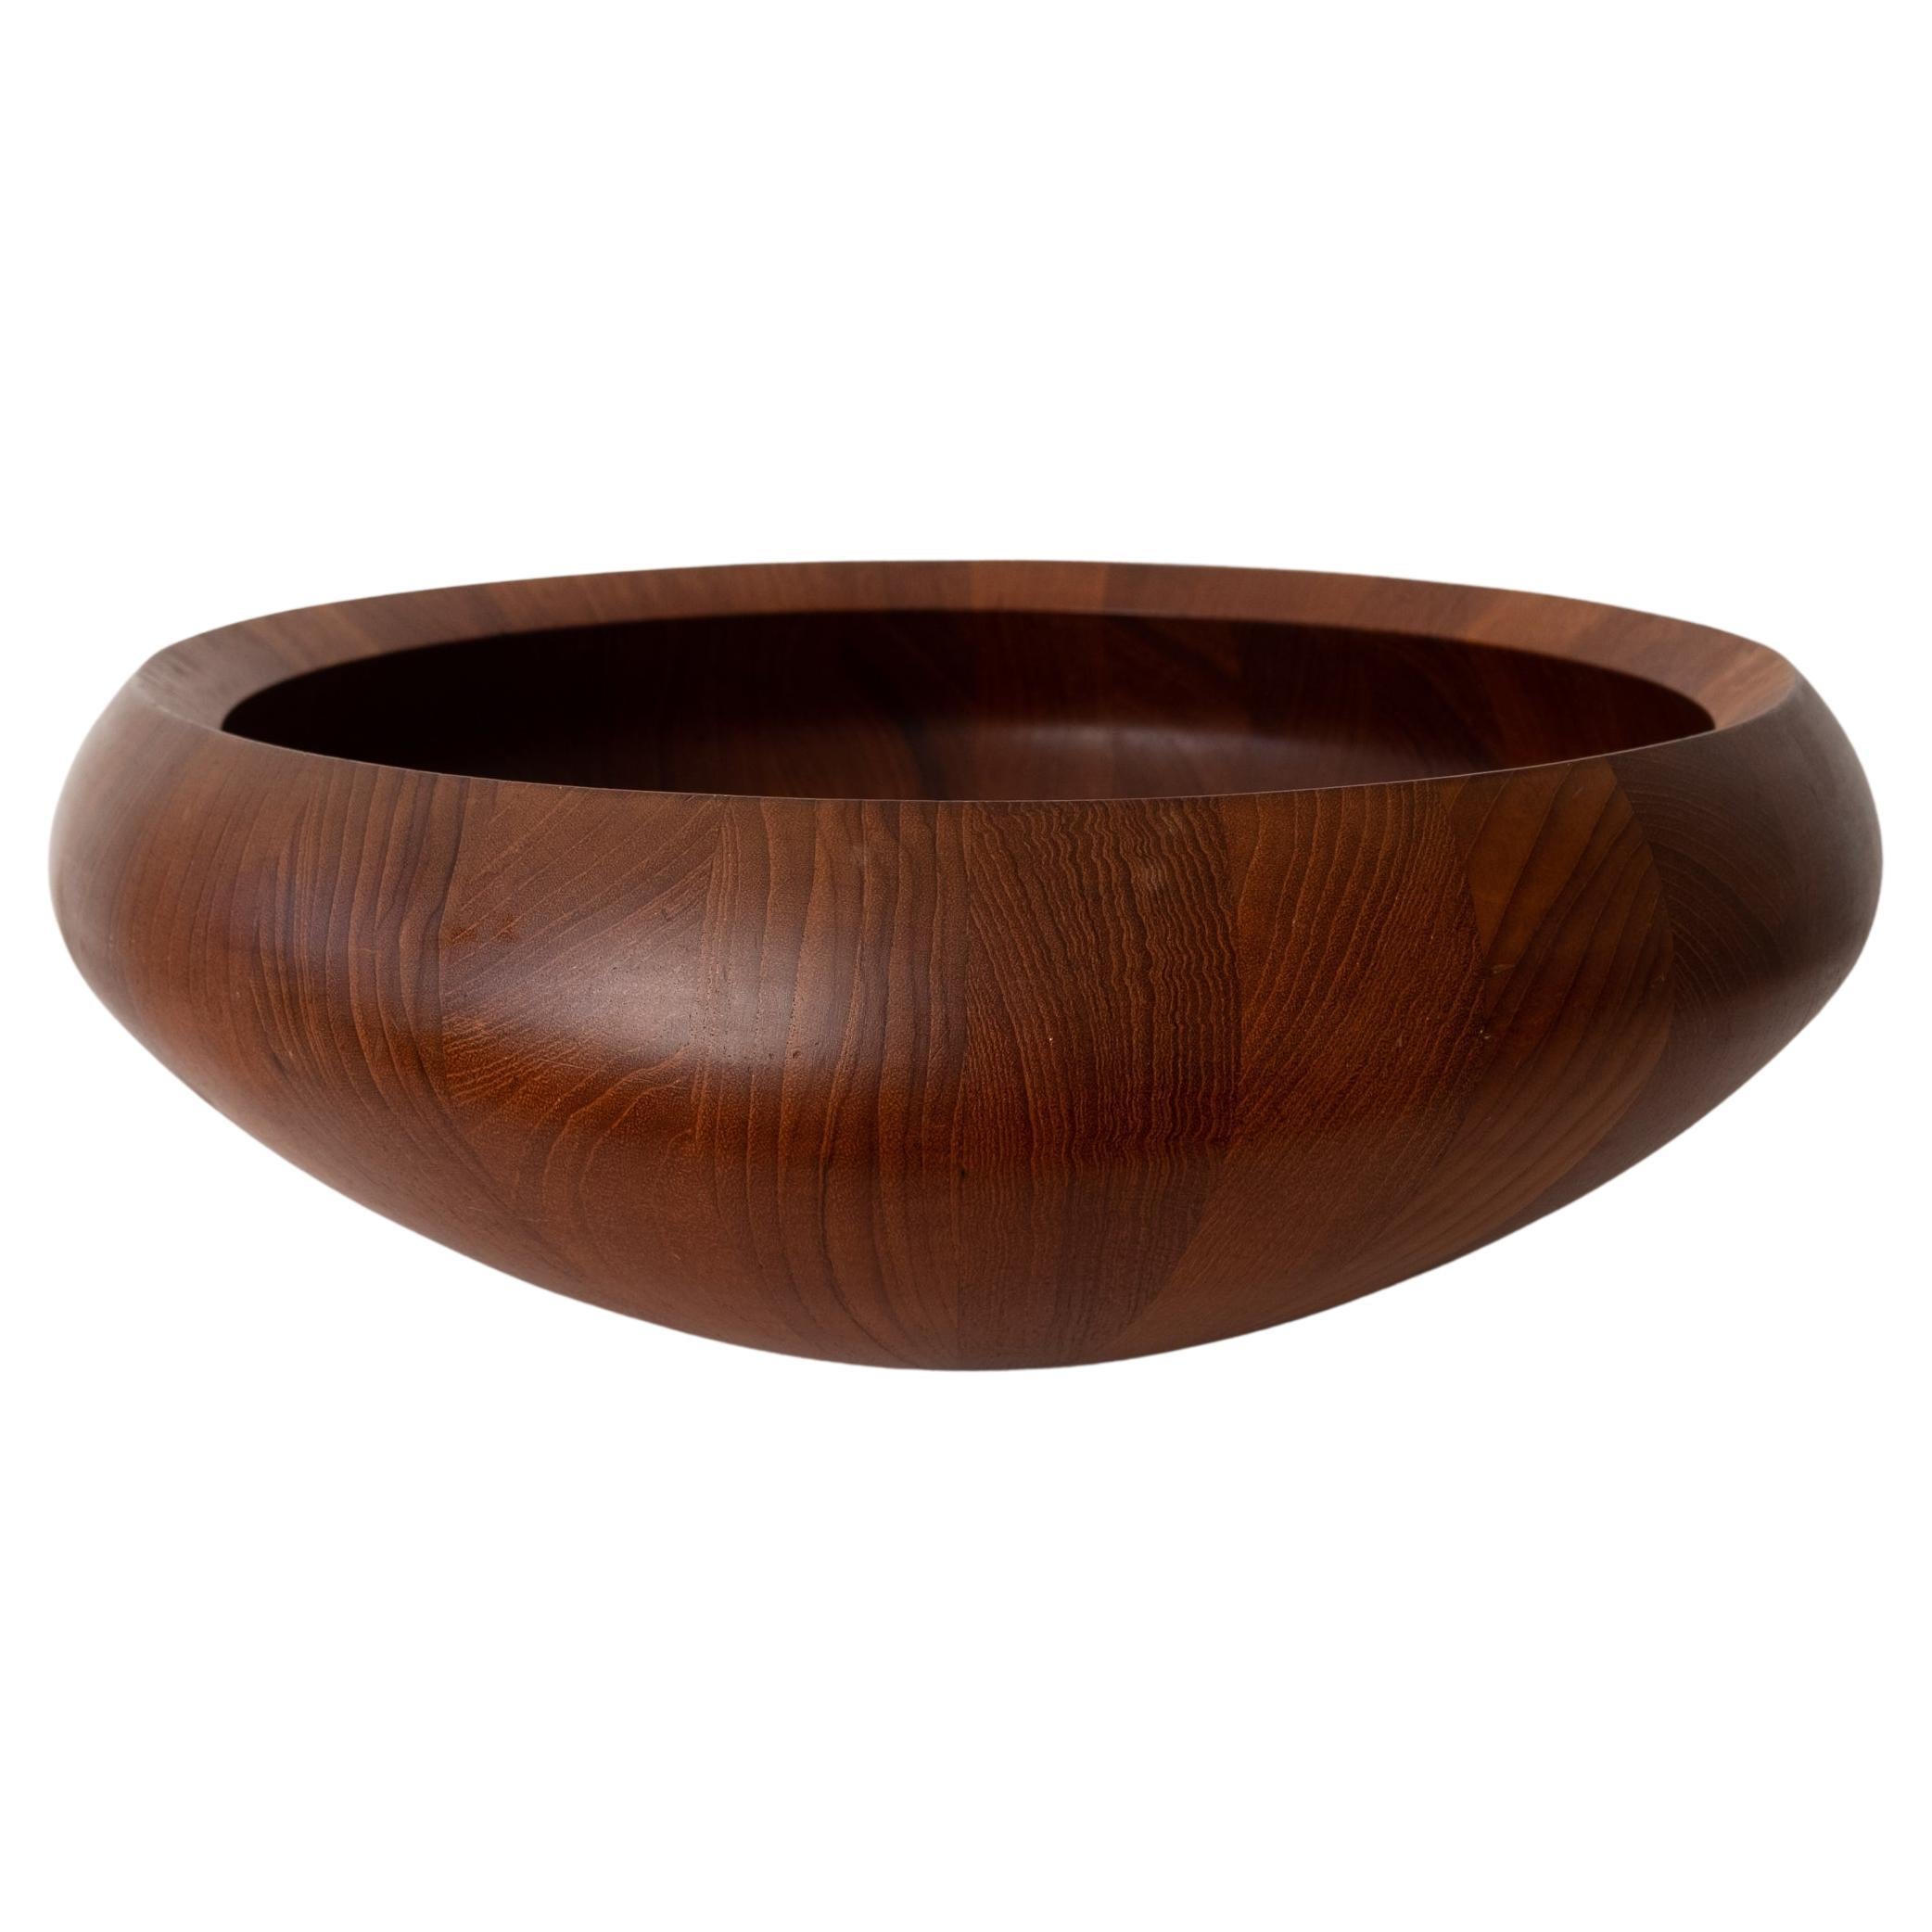 Large Staved Teak Bowl by Jens Quistgaard for Dansk